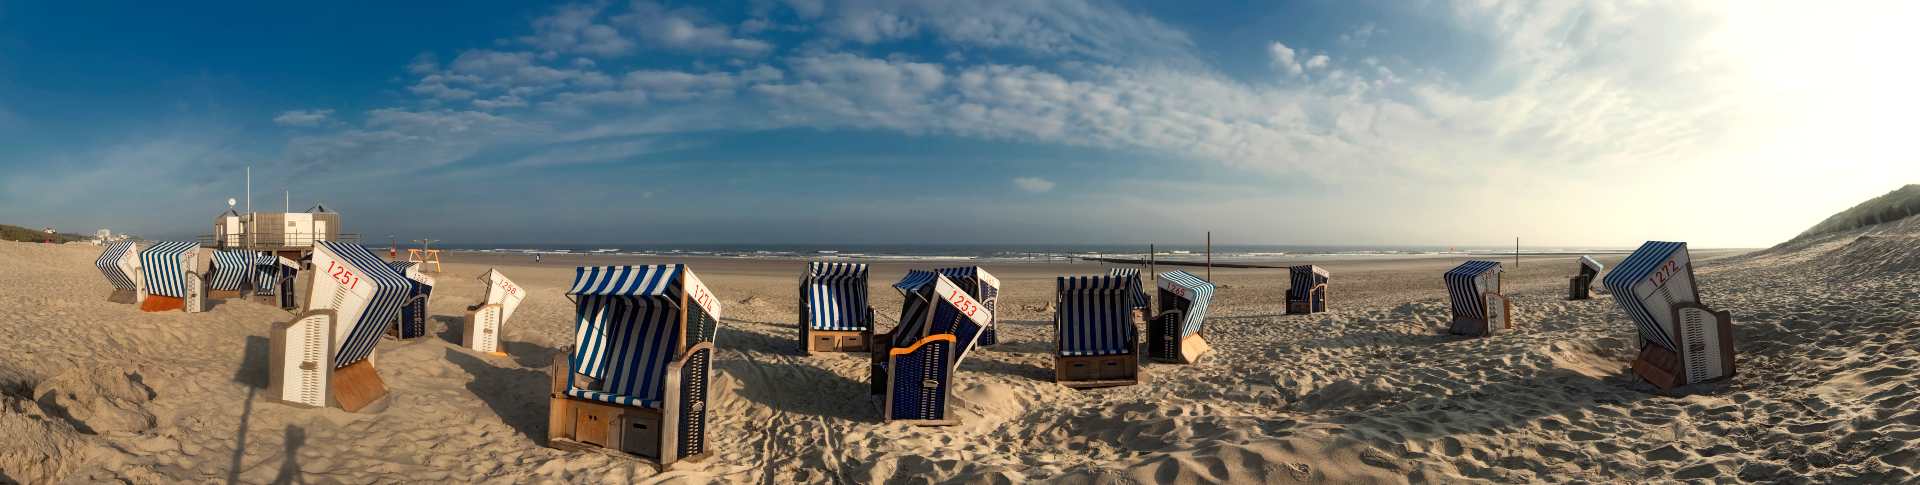 Strandkörbe am Strand von Norderney